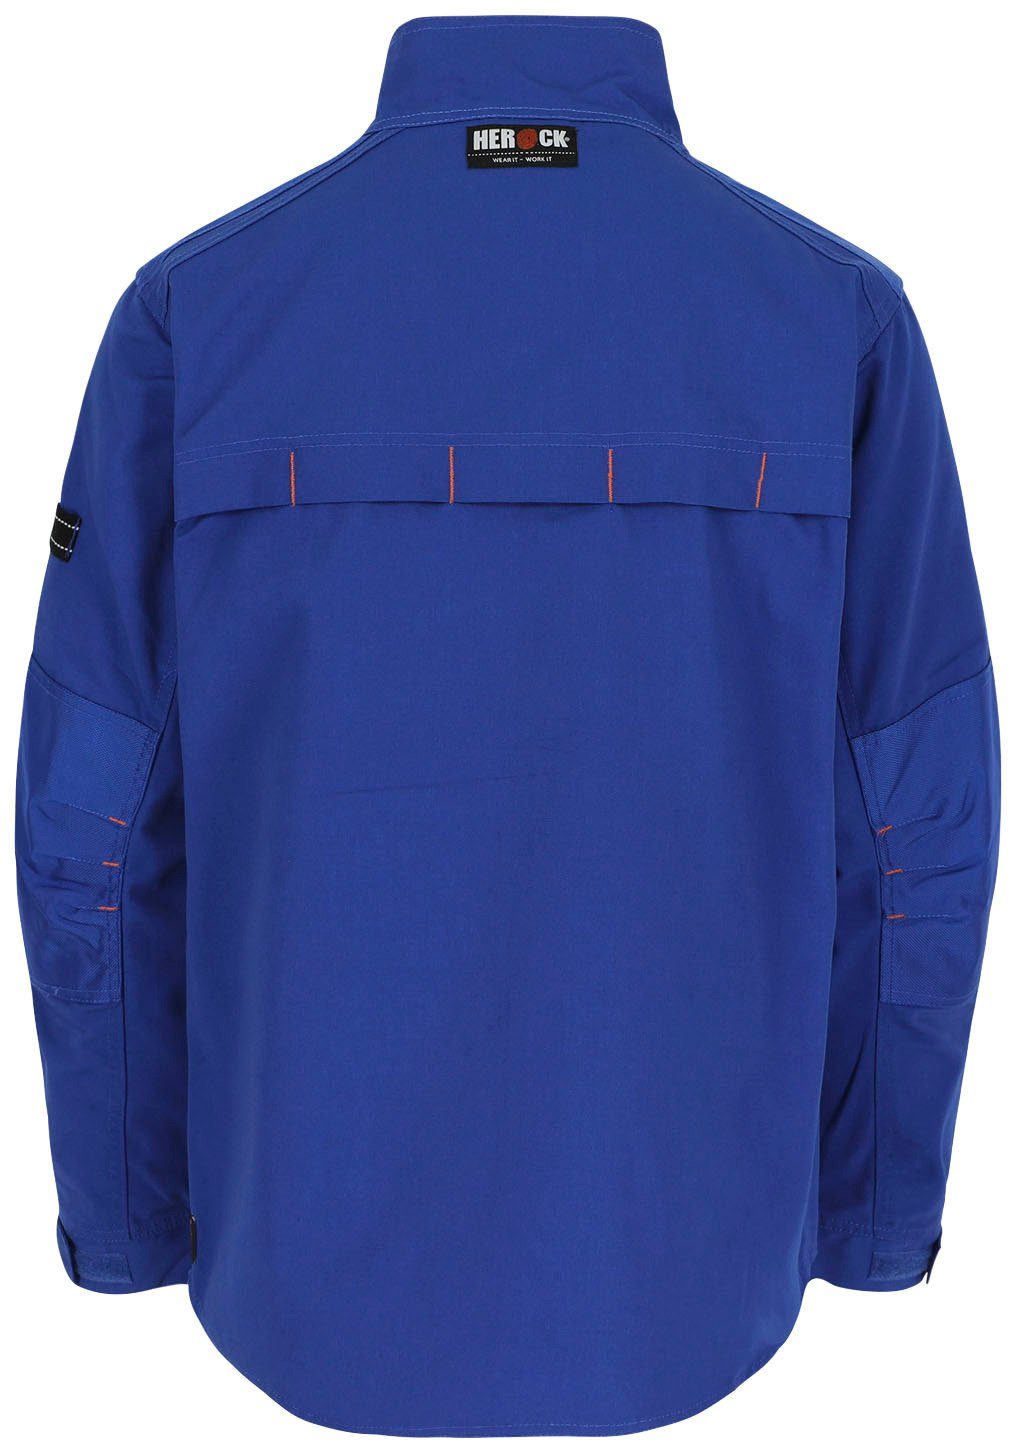 Wasserabweisend Bündchen blau Herock Arbeitsjacke - robust 7 Taschen verstellbare Anzar Jacke - -